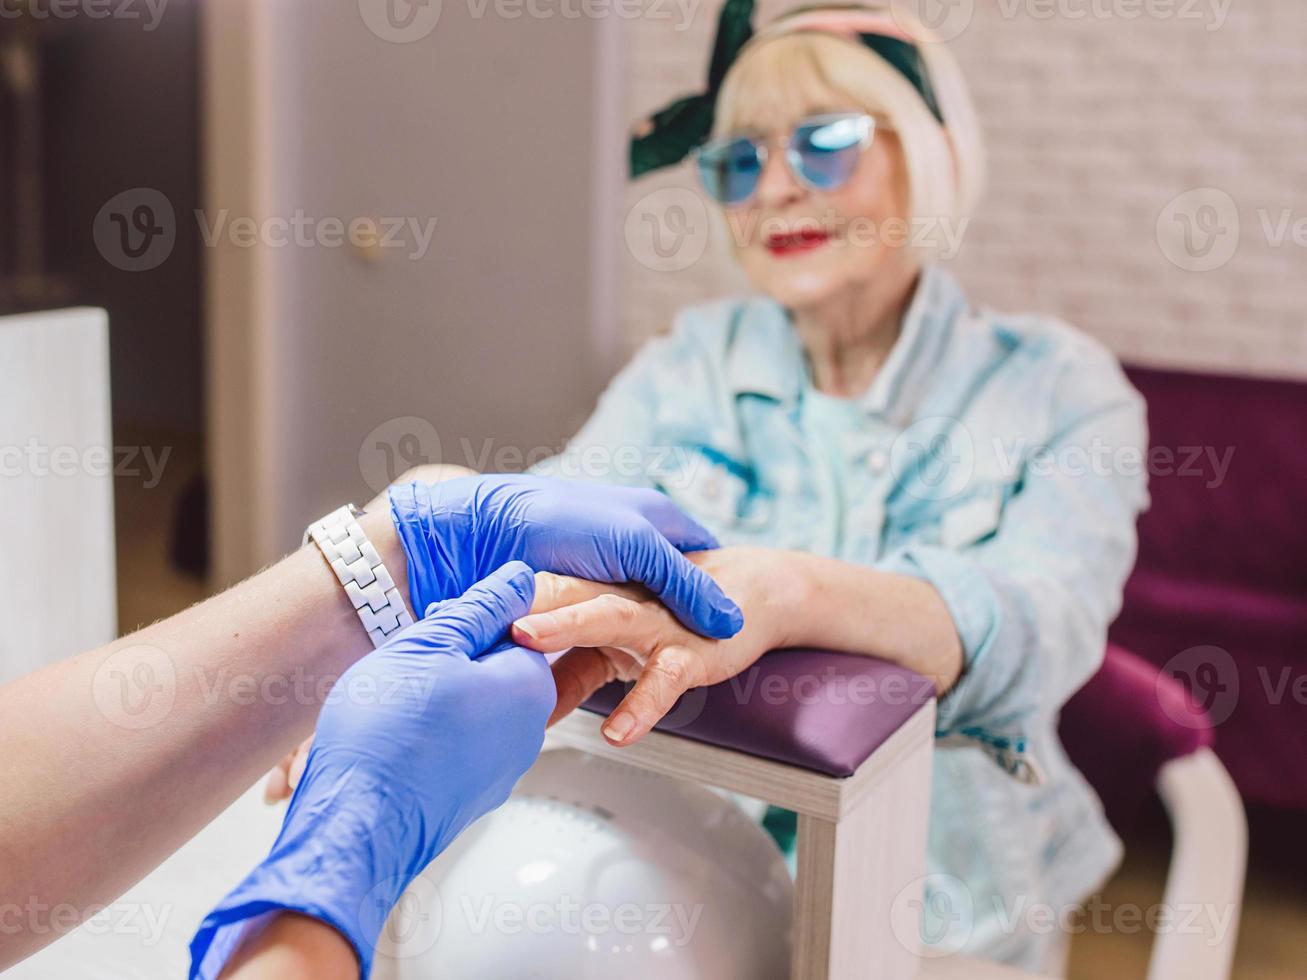 manicure meester in blauwe handschoenen afroming handen van oudere stijlvolle vrouw in blauwe zonnebril en spijkerjasje zittend op manicure salon foto